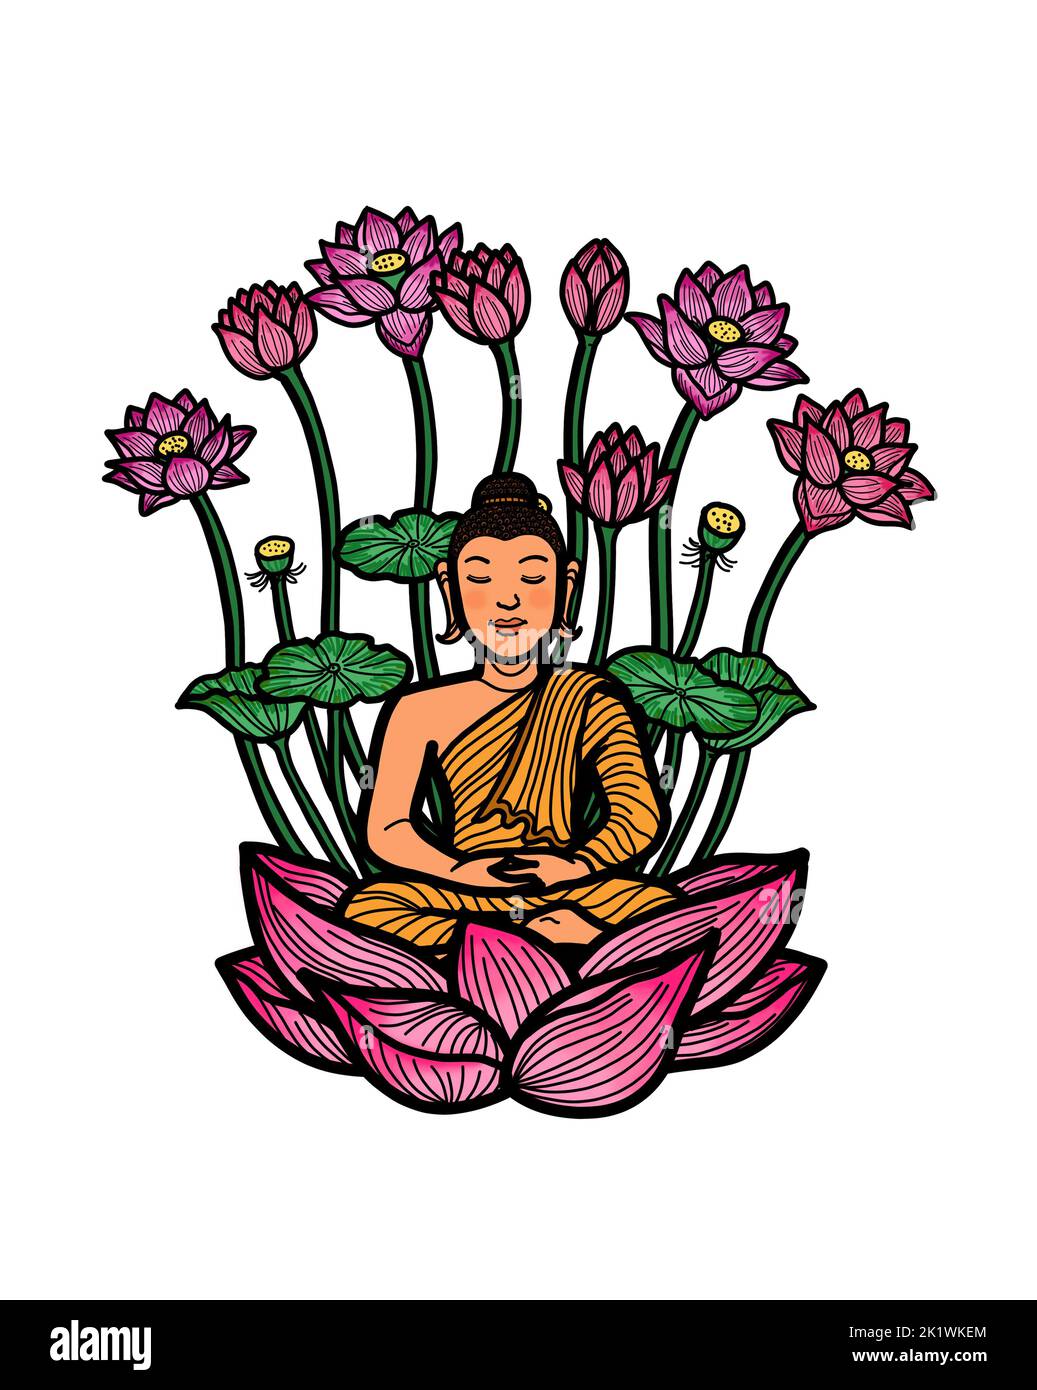 Gautama Buddha sitzt in Lotushaltung und meditiert vor dem Hintergrund von Lotusblumen. Buddhistische Meditationspraxis für Erleuchtung, Achtsamkeit, Frieden, Harmo Stockfoto